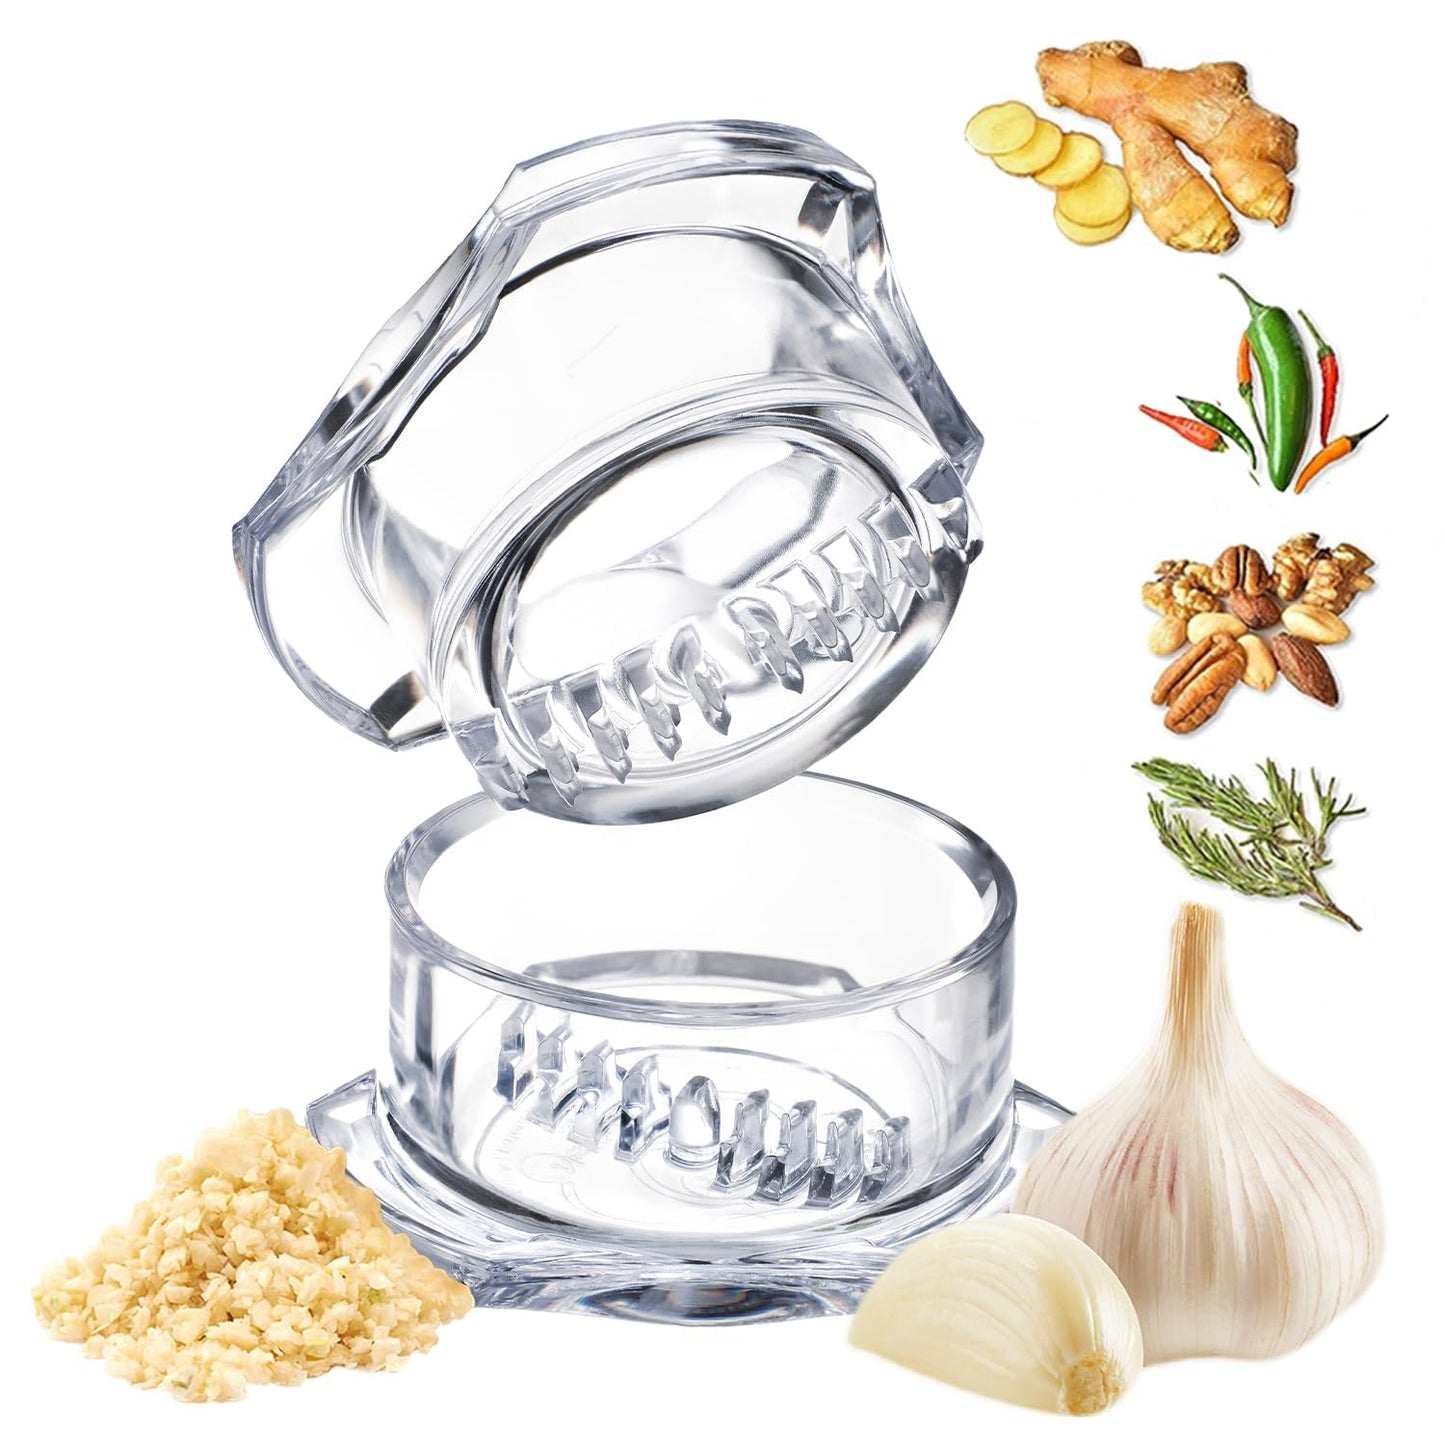 Nextrend Garlic Twister Chopper 4th Gen - Versatile Handheld Kitchen Mincer, BPA-Free, Dishwasher Safe